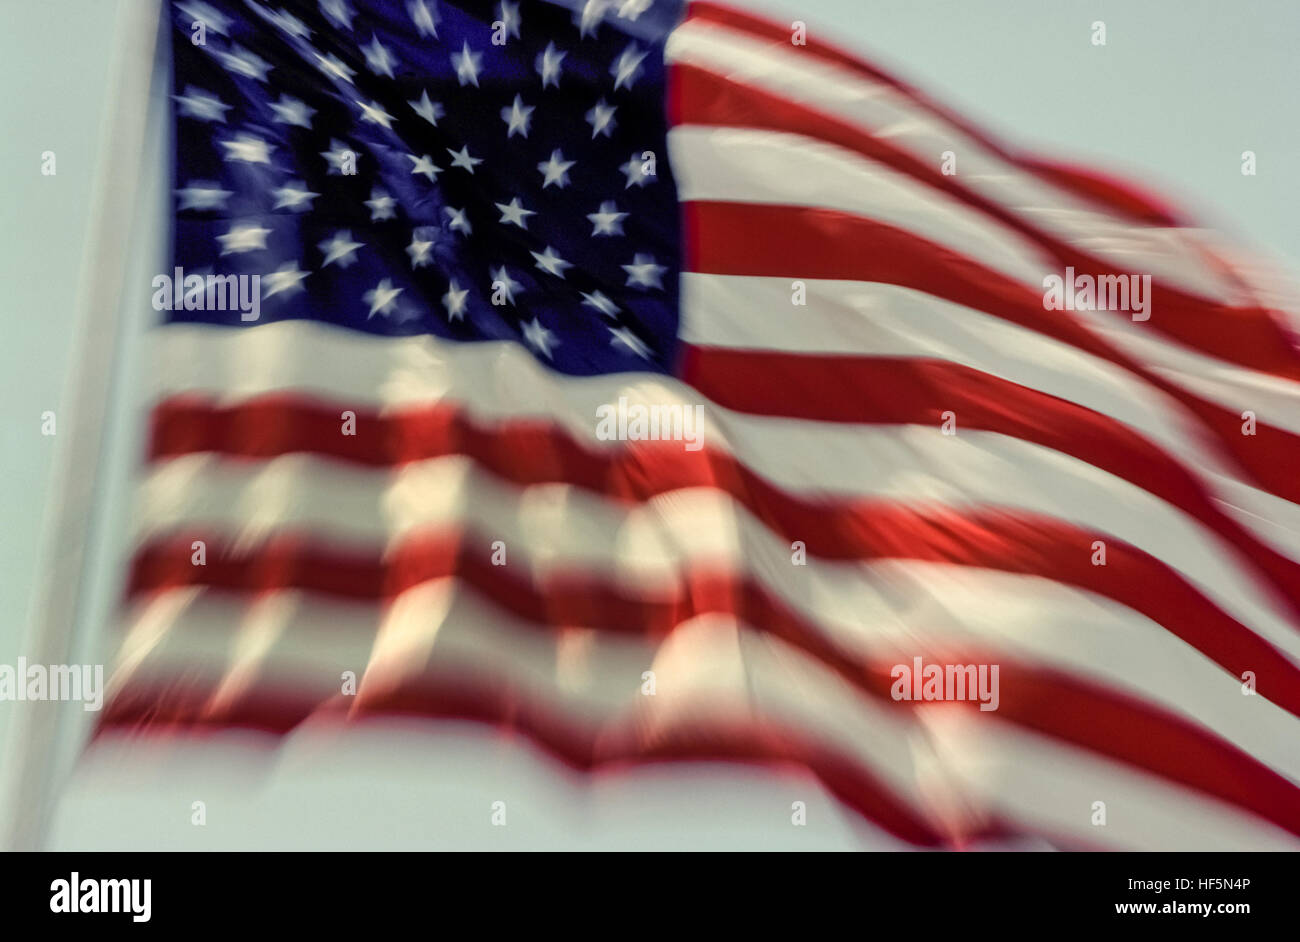 Le drapeau national des États-Unis d'Amérique est connu comme le drapeau américain, le Stars and Stripes, ancienne gloire, et The Star-Spangled Banner. Les 5 branches 50 petites étoiles blanches sur un champ rectangulaire bleu représentent les 50 États des États-Unis, tandis que les rouges et blancs 13 bandes horizontales représentent les 13 colonies britanniques en Amérique du Nord qui a déclaré son indépendance de la Grande-Bretagne. Adopté en 1960, c'est la 27e version du drapeau des États-Unis qui a d'abord conçu en 1777. Il est montré ici dans le vent. Banque D'Images